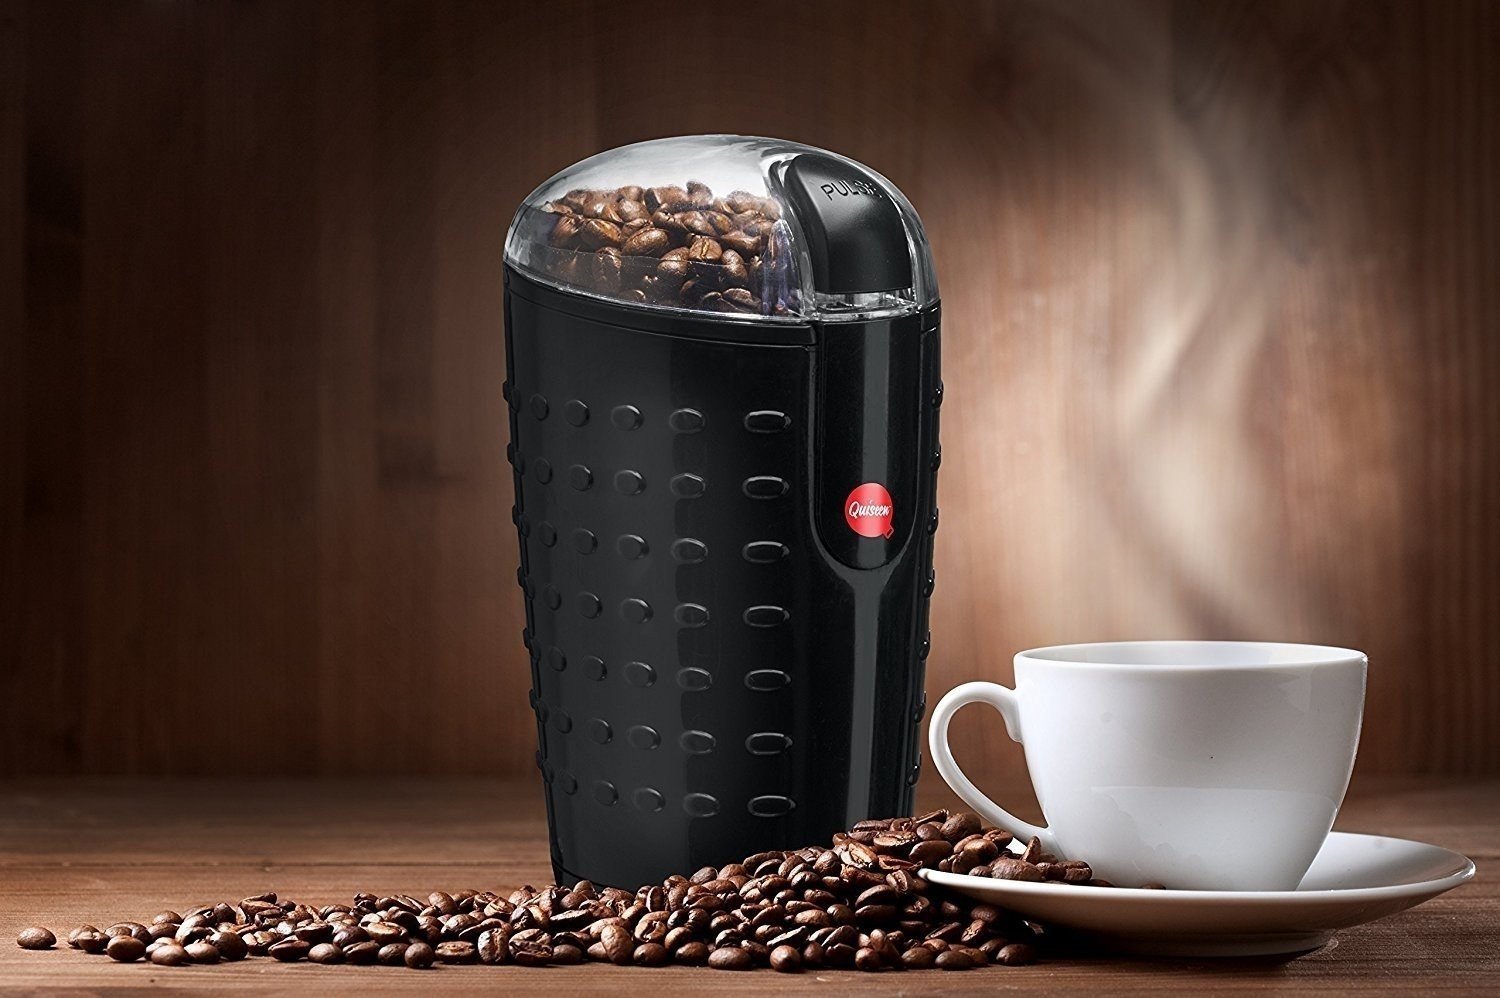 Кофемолка электрическая electric coffee grinder